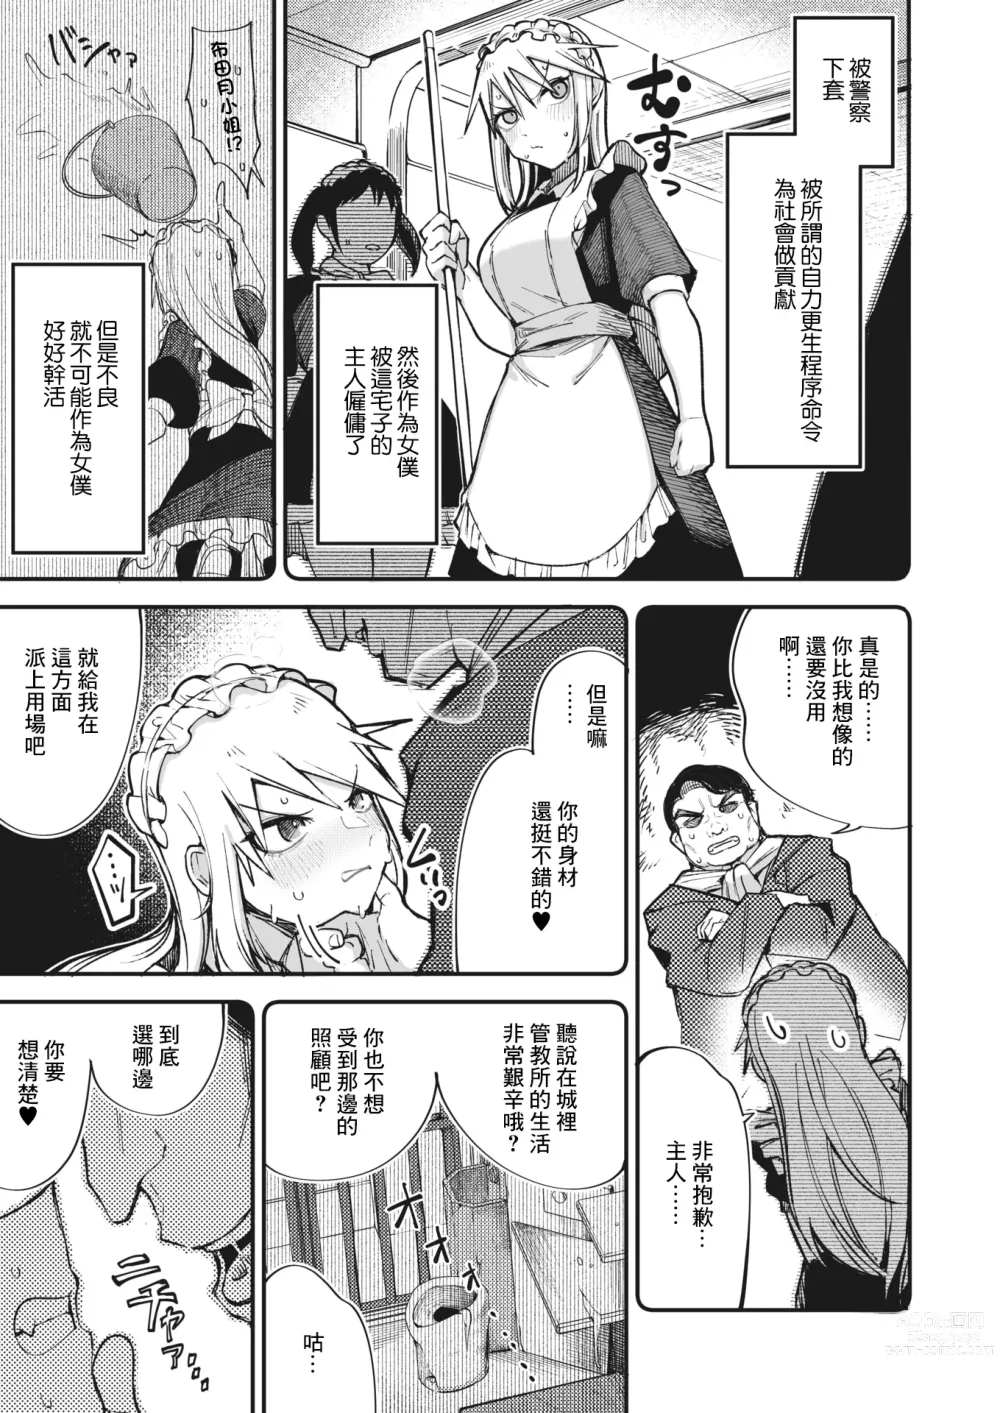 Page 3 of manga Furyou Shoujo, Kousei shimasu... ka!?